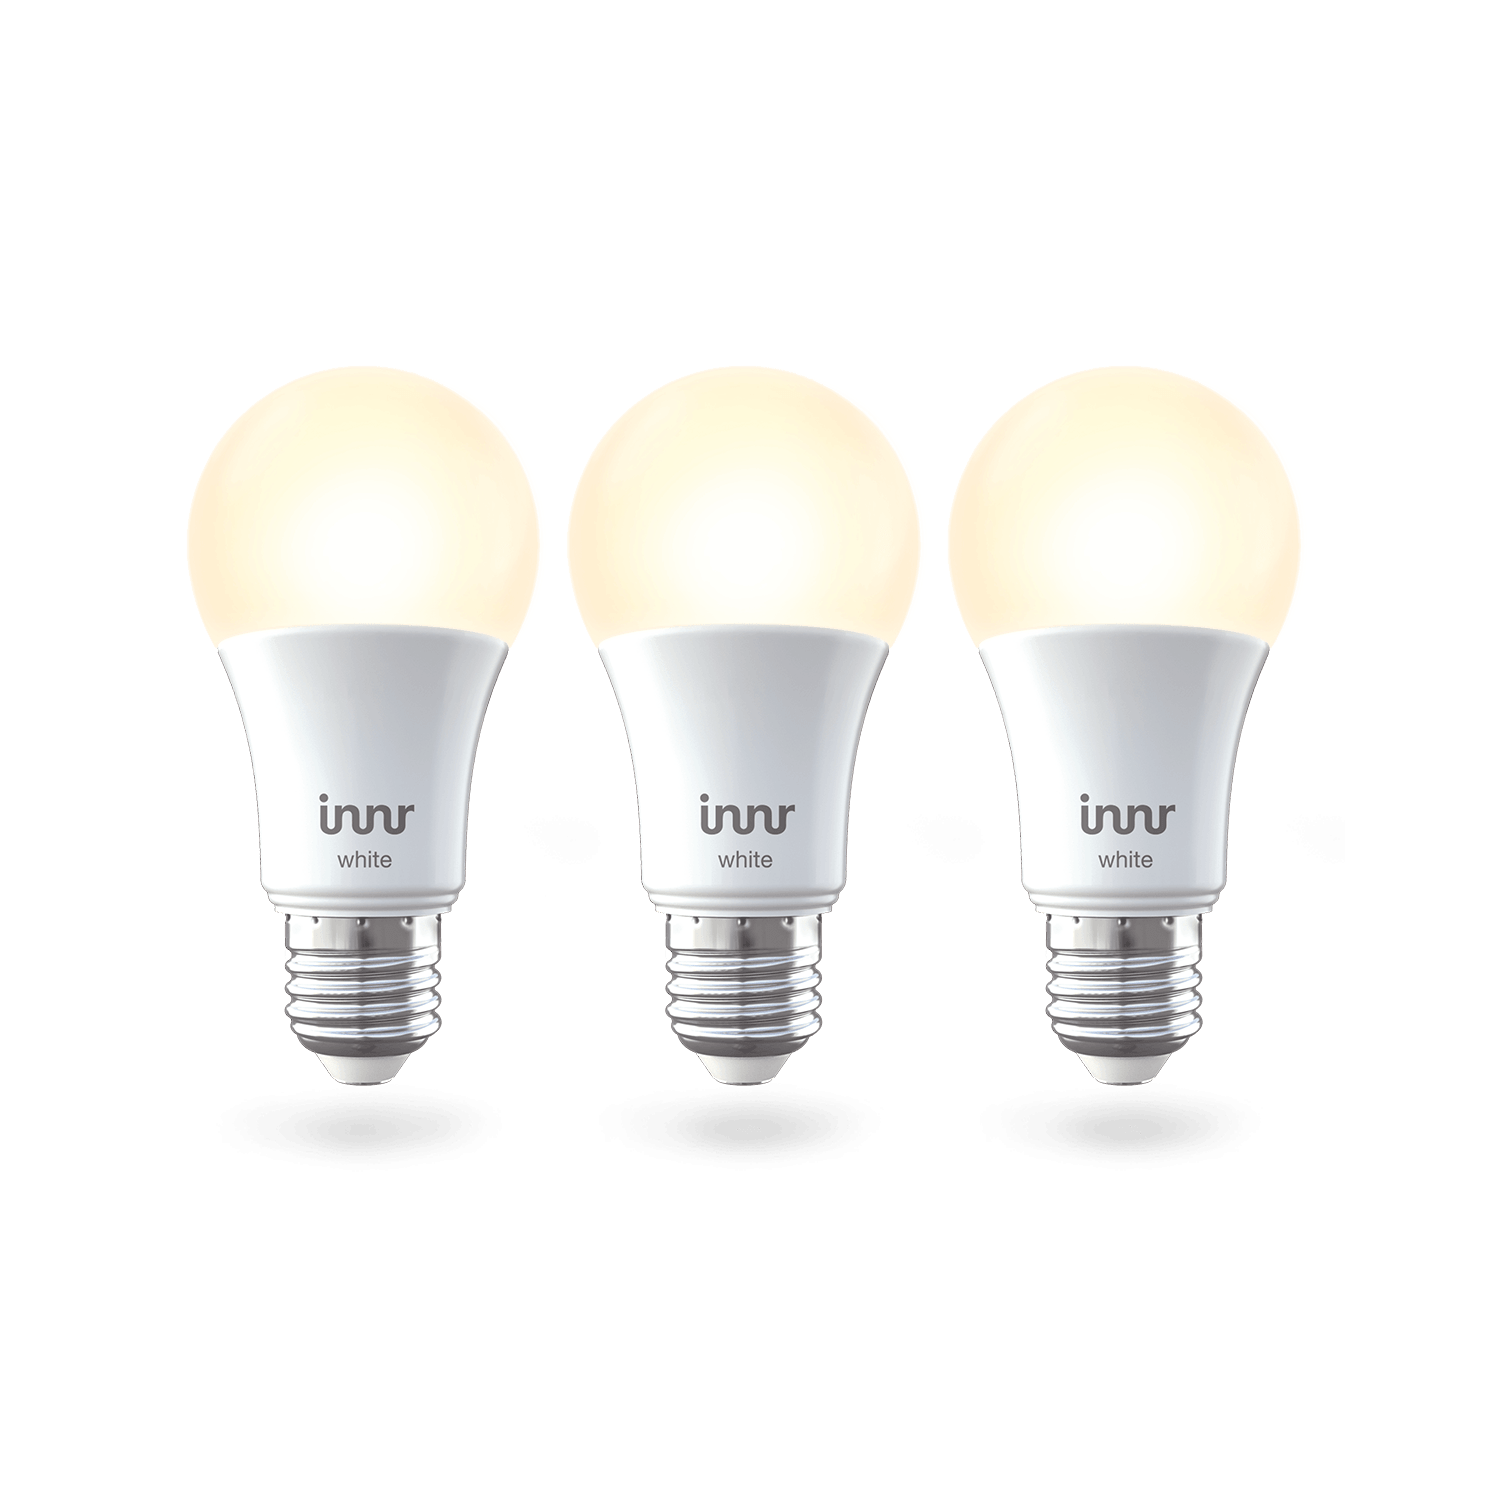 Innr Smart Bulb E27 white 806lm Zigbee 3.0 - 3 Pack